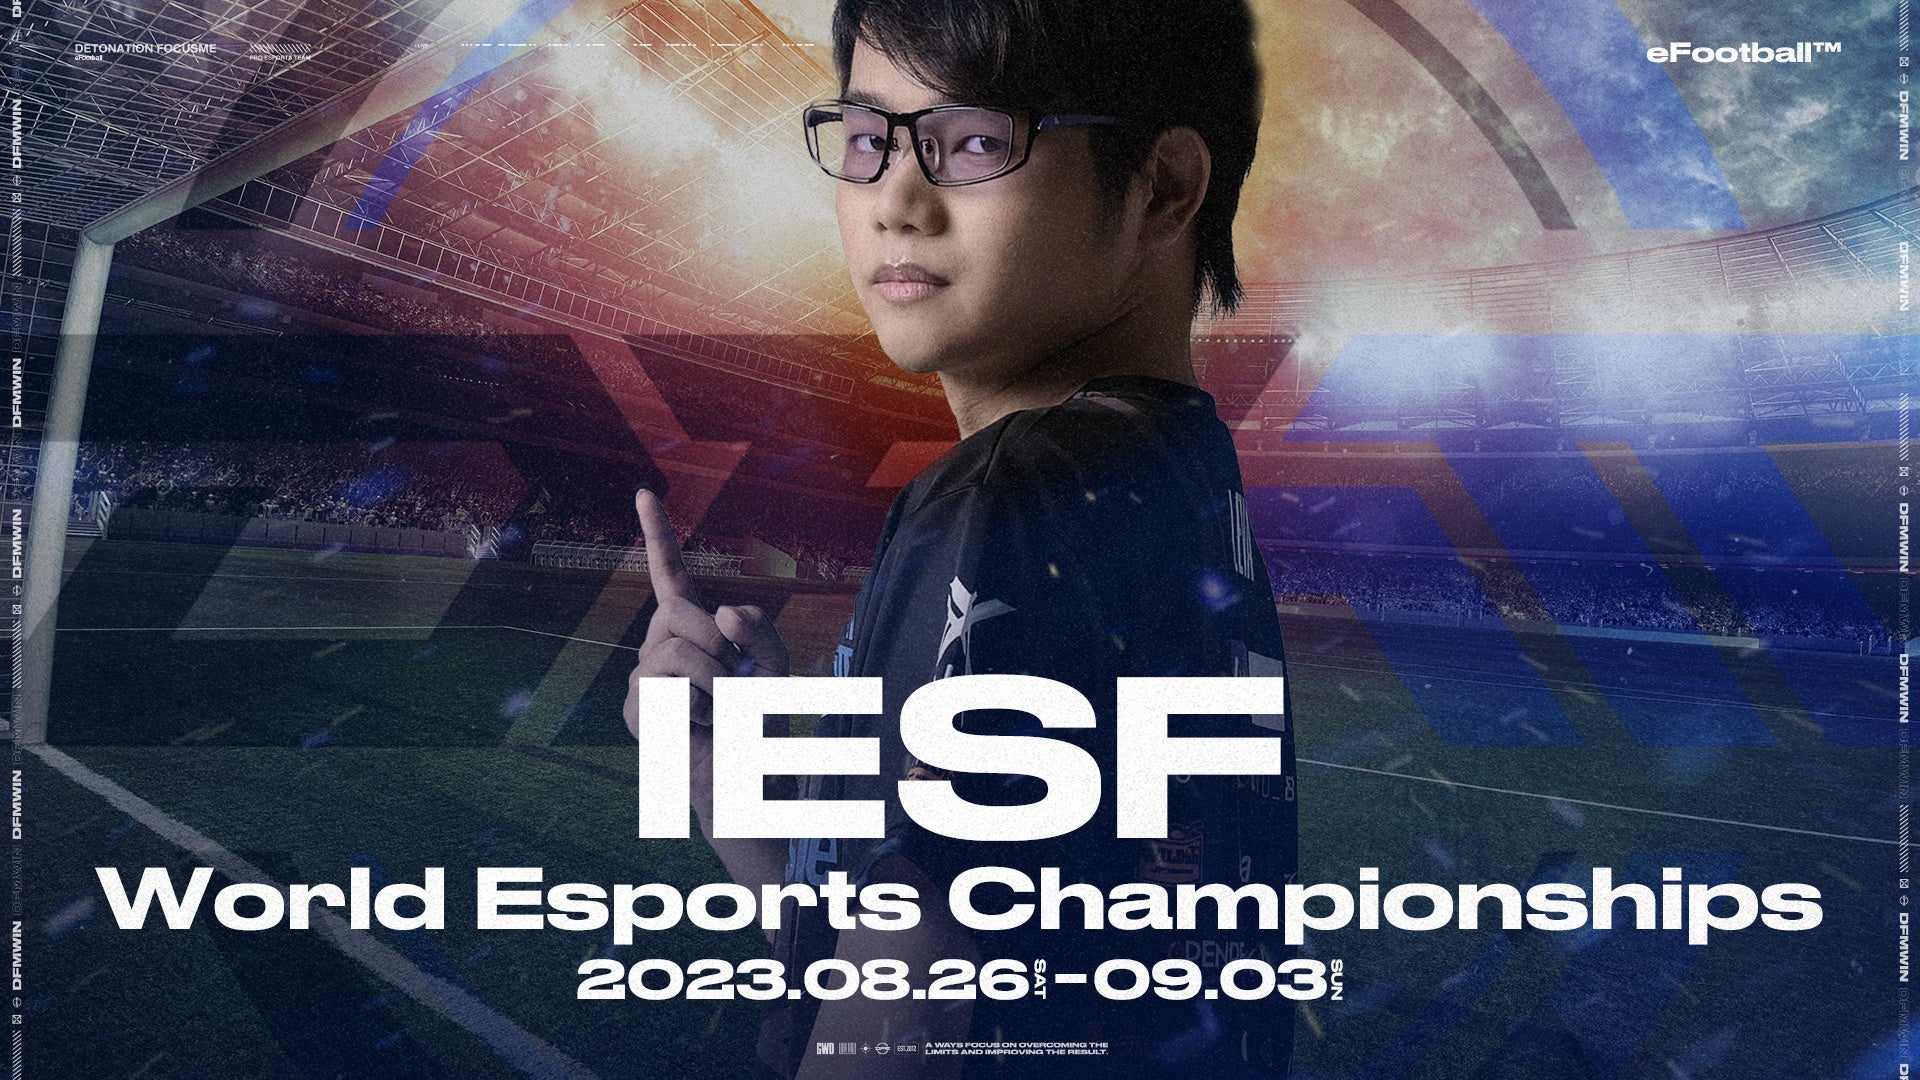 DetonatioN FocusMe、「IeSFワールド eスポーツチャンピオンシップ」に「eFootball」部門のLeva選手が日本代表として出場